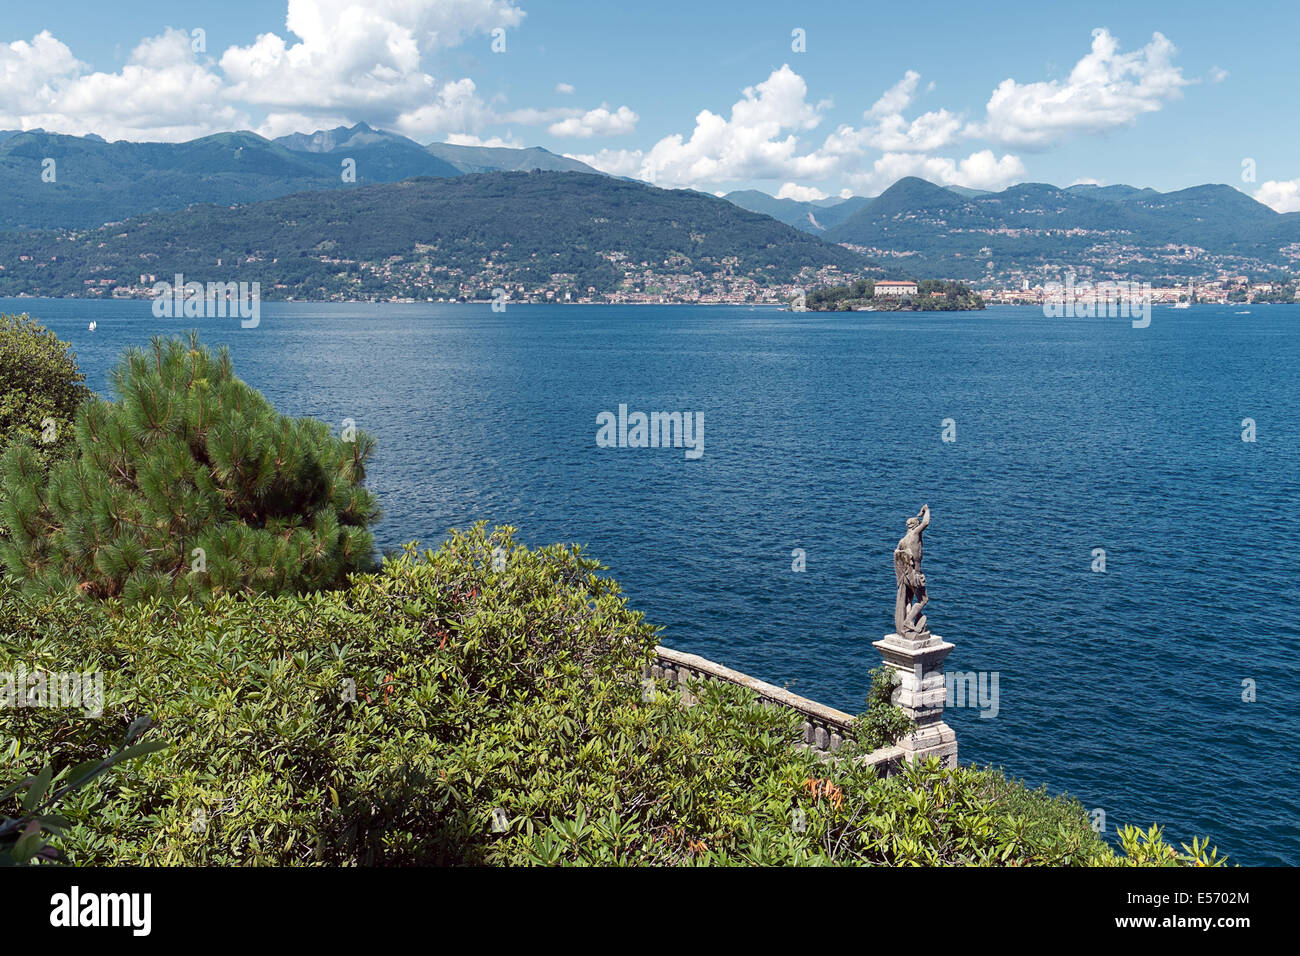 Stresa - Isola Bella and Isola dei Pescatori - Lago Maggiore Stock Photo